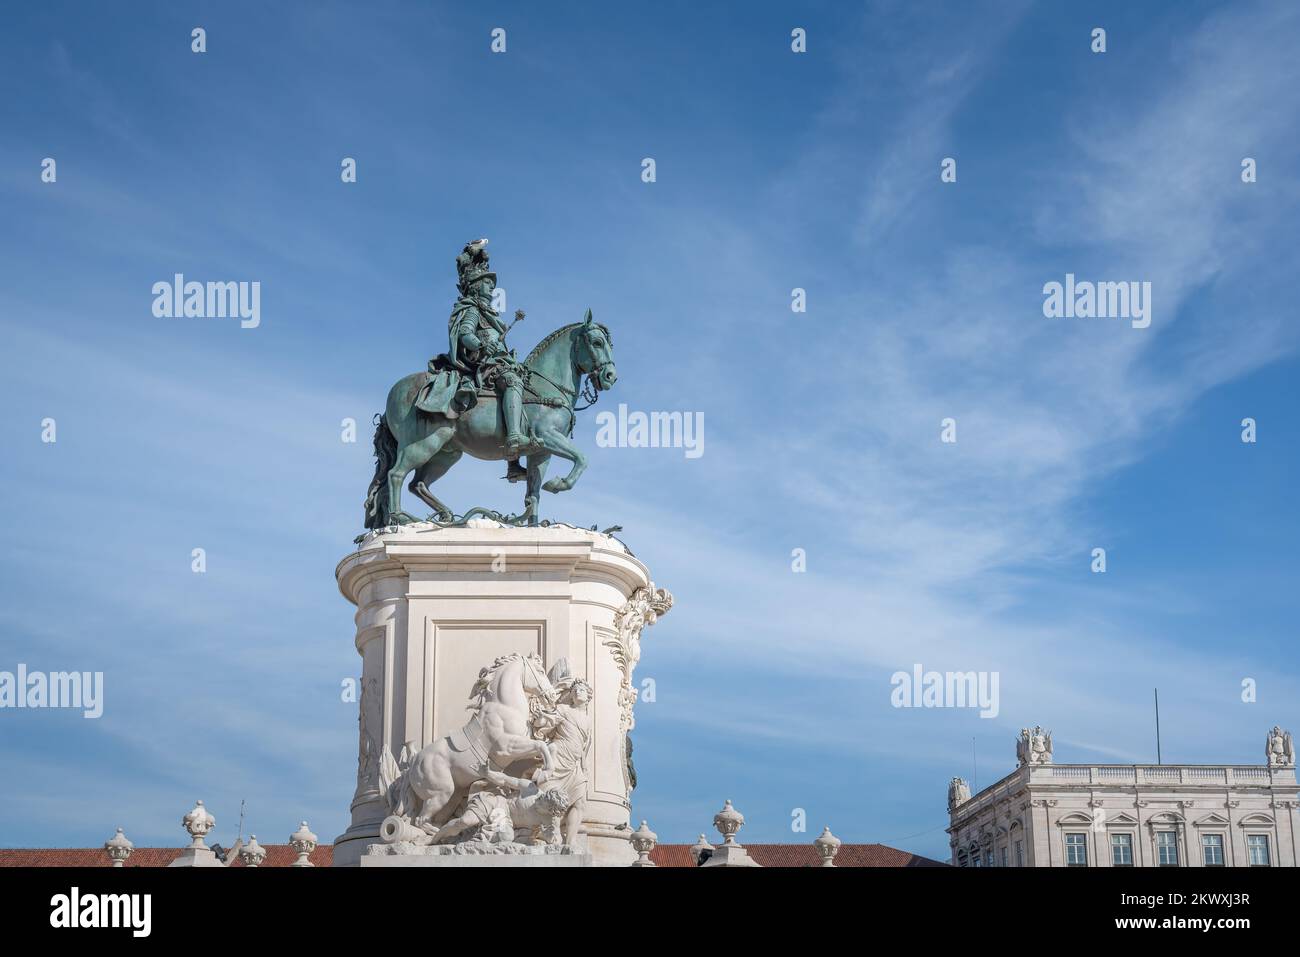 Statua del re Dom Jose i in Piazza Praca do Comercio - Lisbona, Portogallo Foto Stock